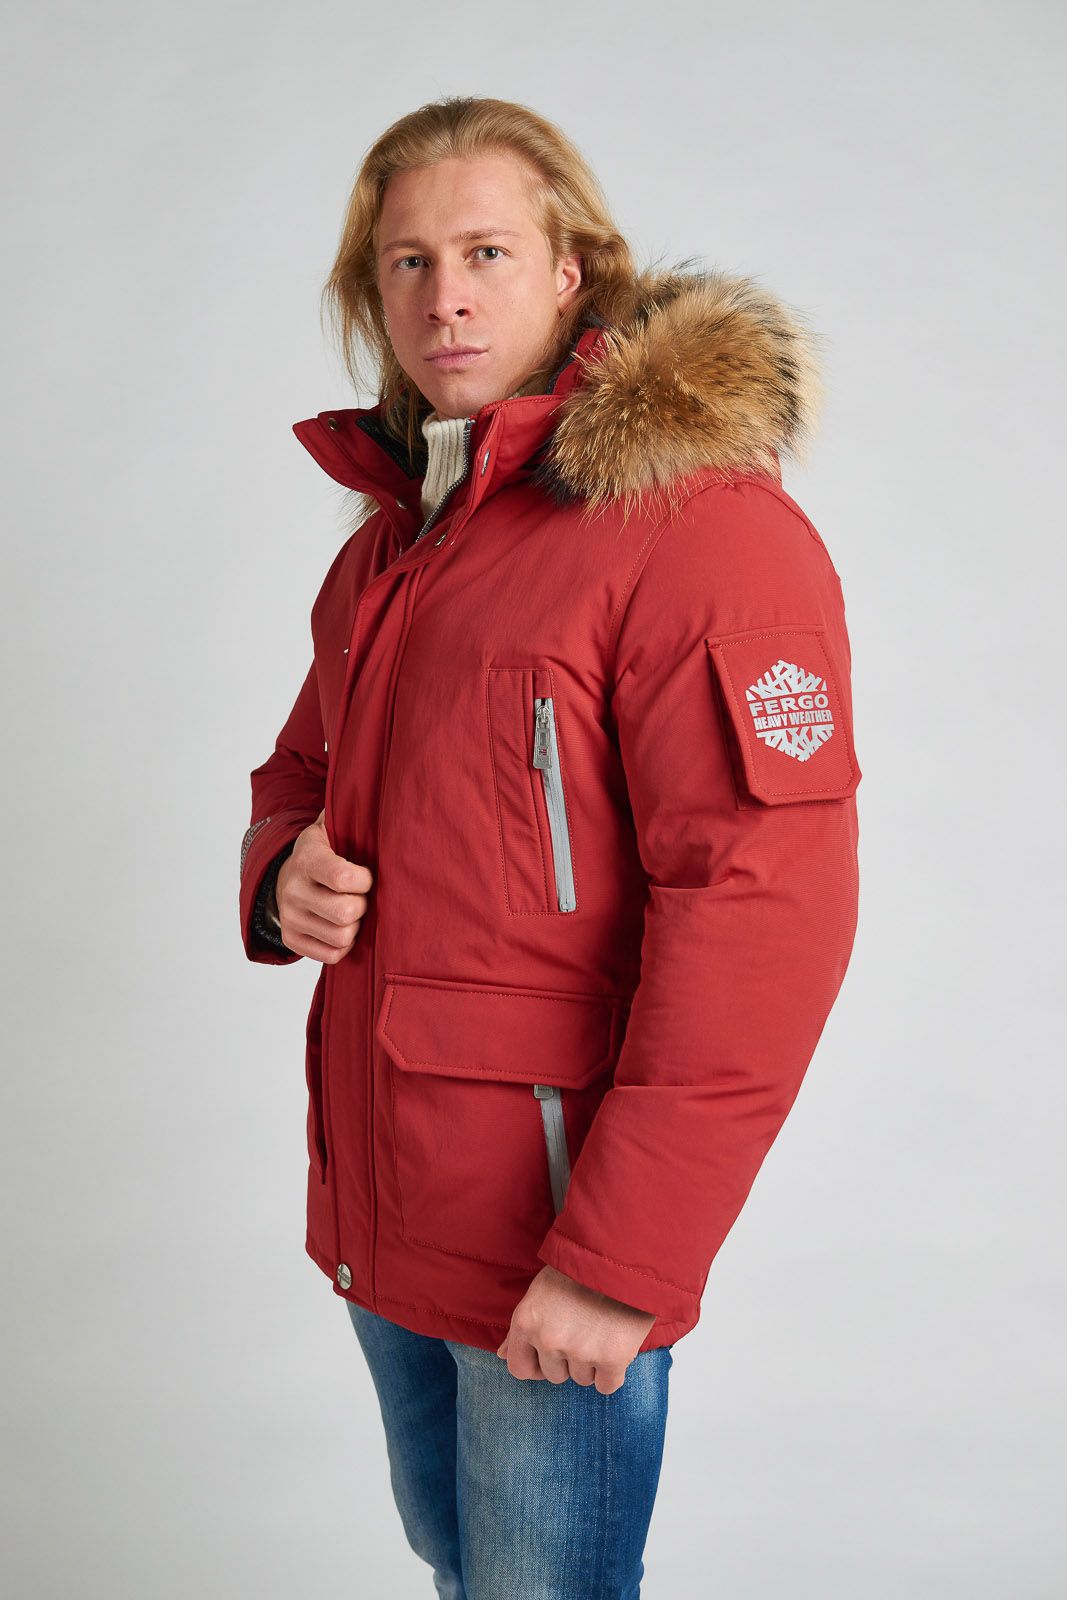 Мужская зимняя куртка из новой коллекции бренда "Ферго-Норге".Оче...